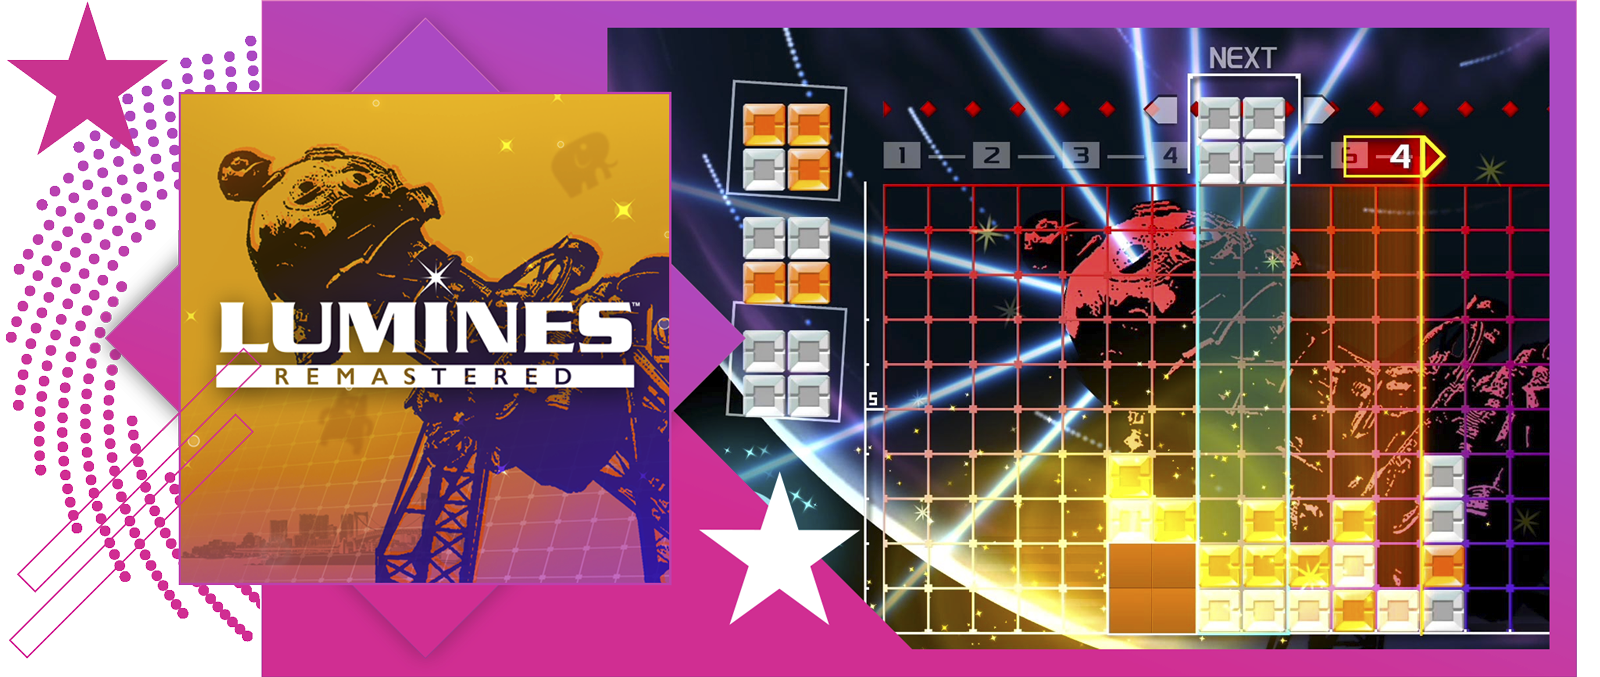 Image de présentation des meilleurs jeux de rythme, avec des illustrations et du gameplay clés de Lumines Remastered.